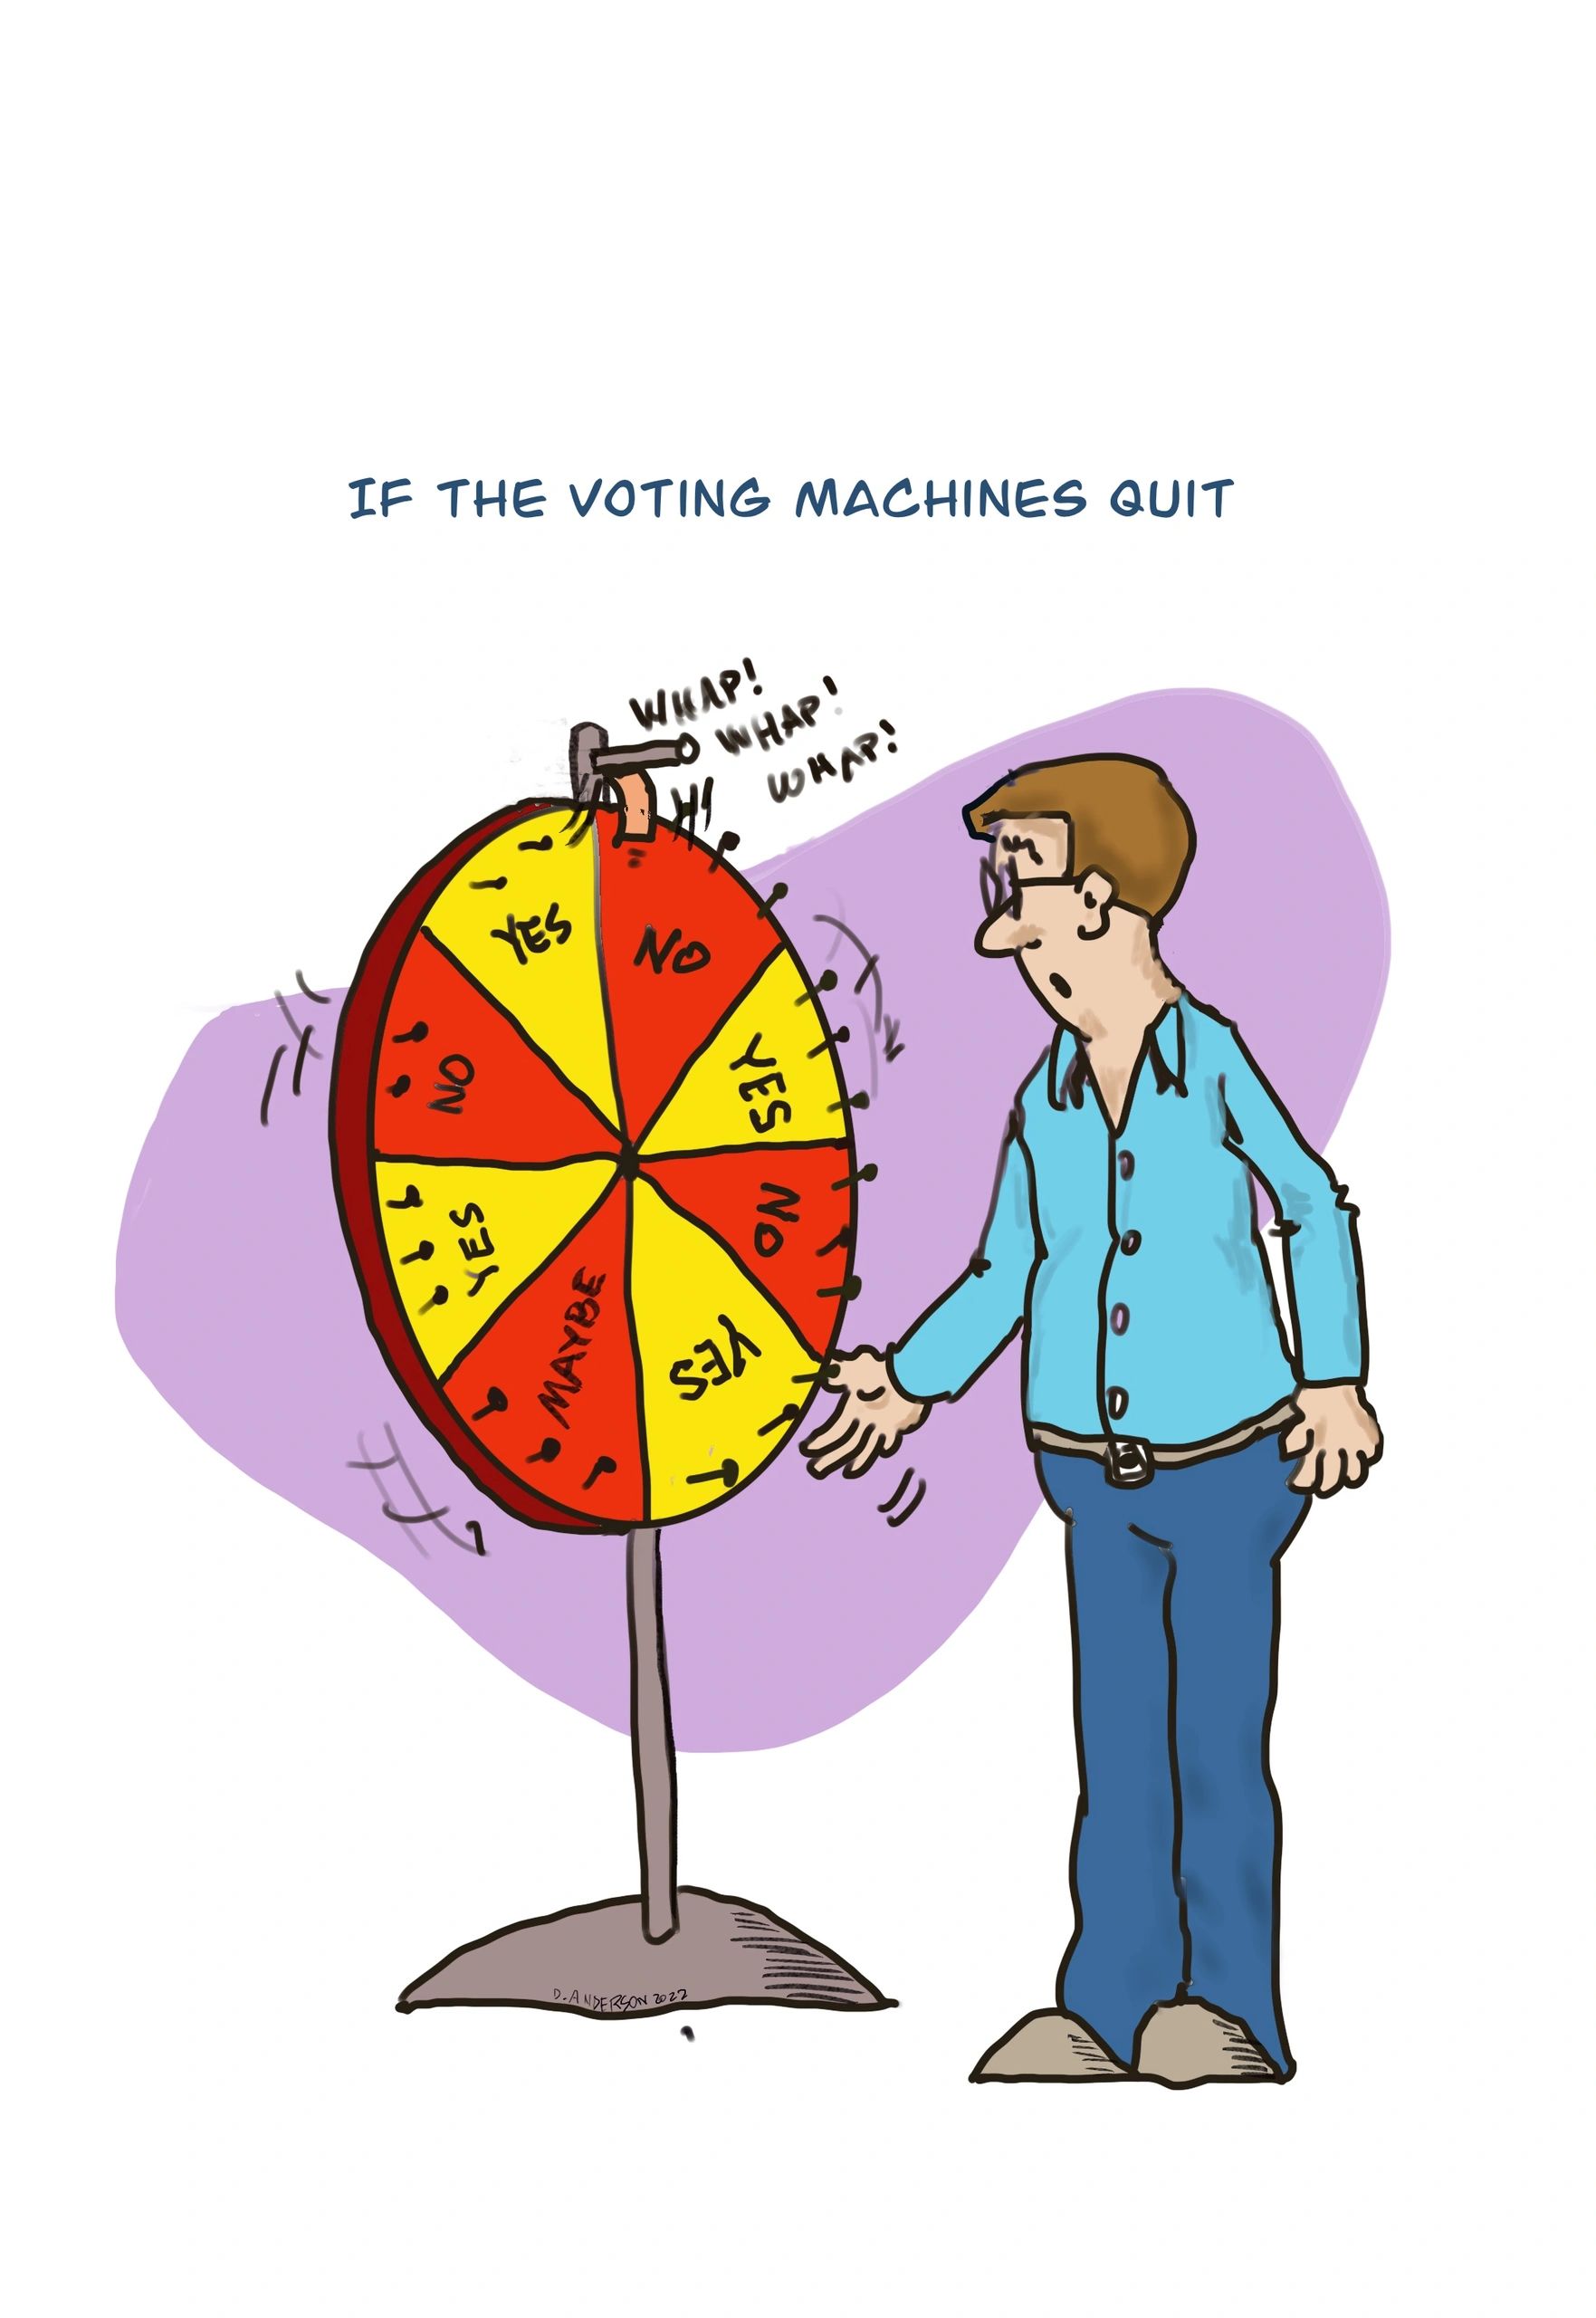 voting machines quit